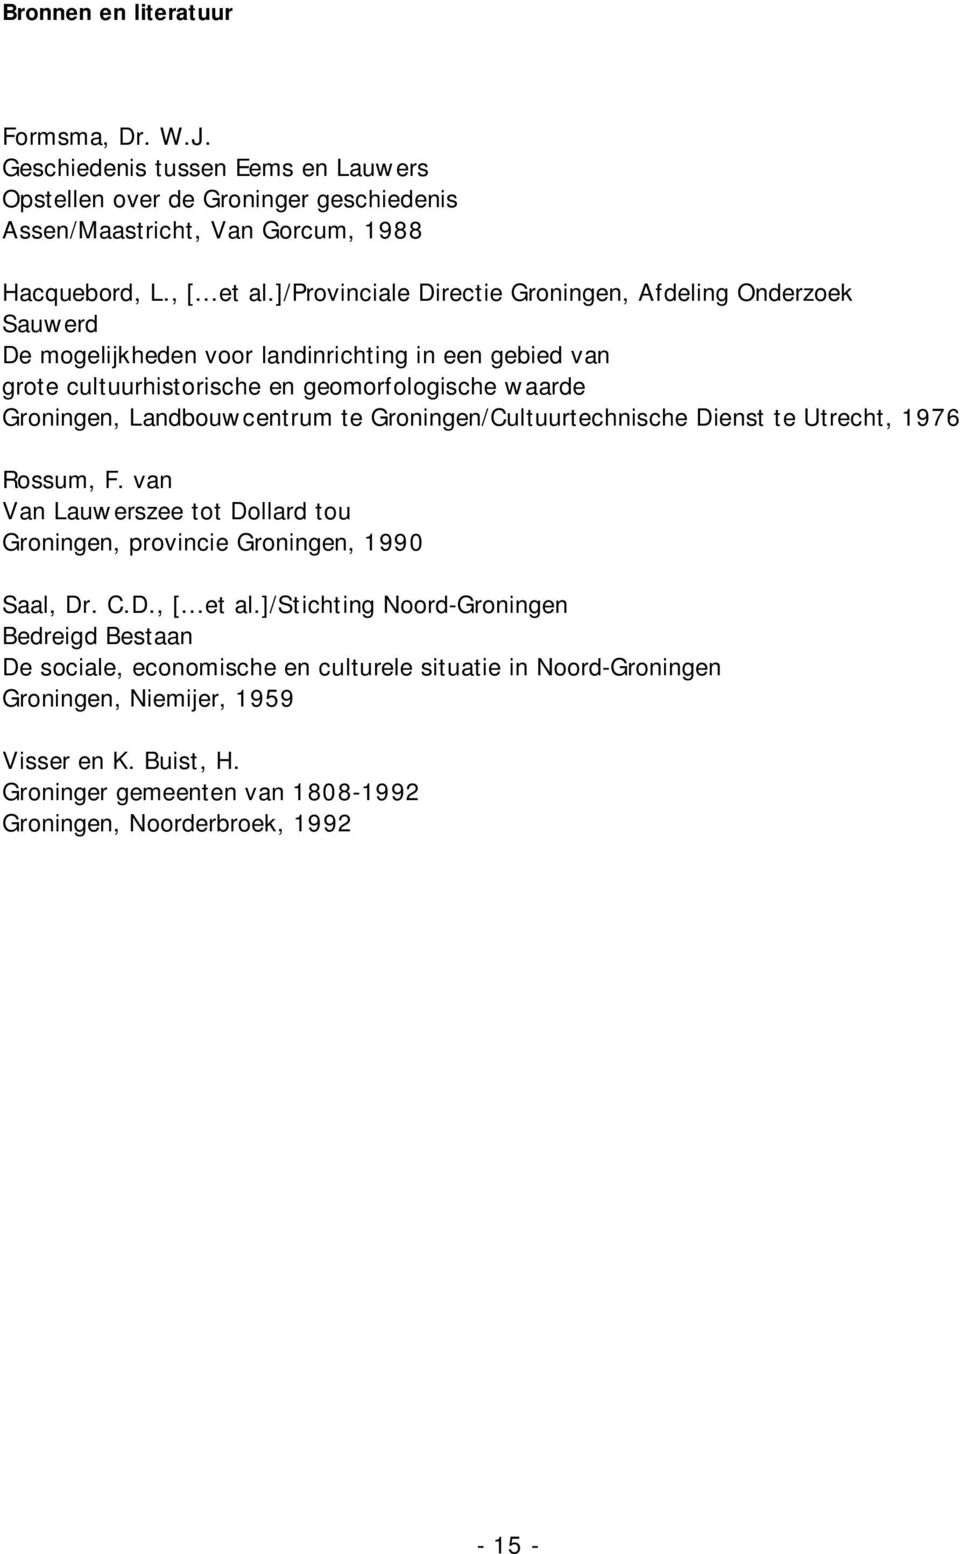 Landbouwcentrum te Groningen/Cultuurtechnische Dienst te Utrecht, 1976 Rossum, F. van Van Lauwerszee tot Dollard tou Groningen, provincie Groningen, 1990 Saal, Dr. C.D., [...et al.